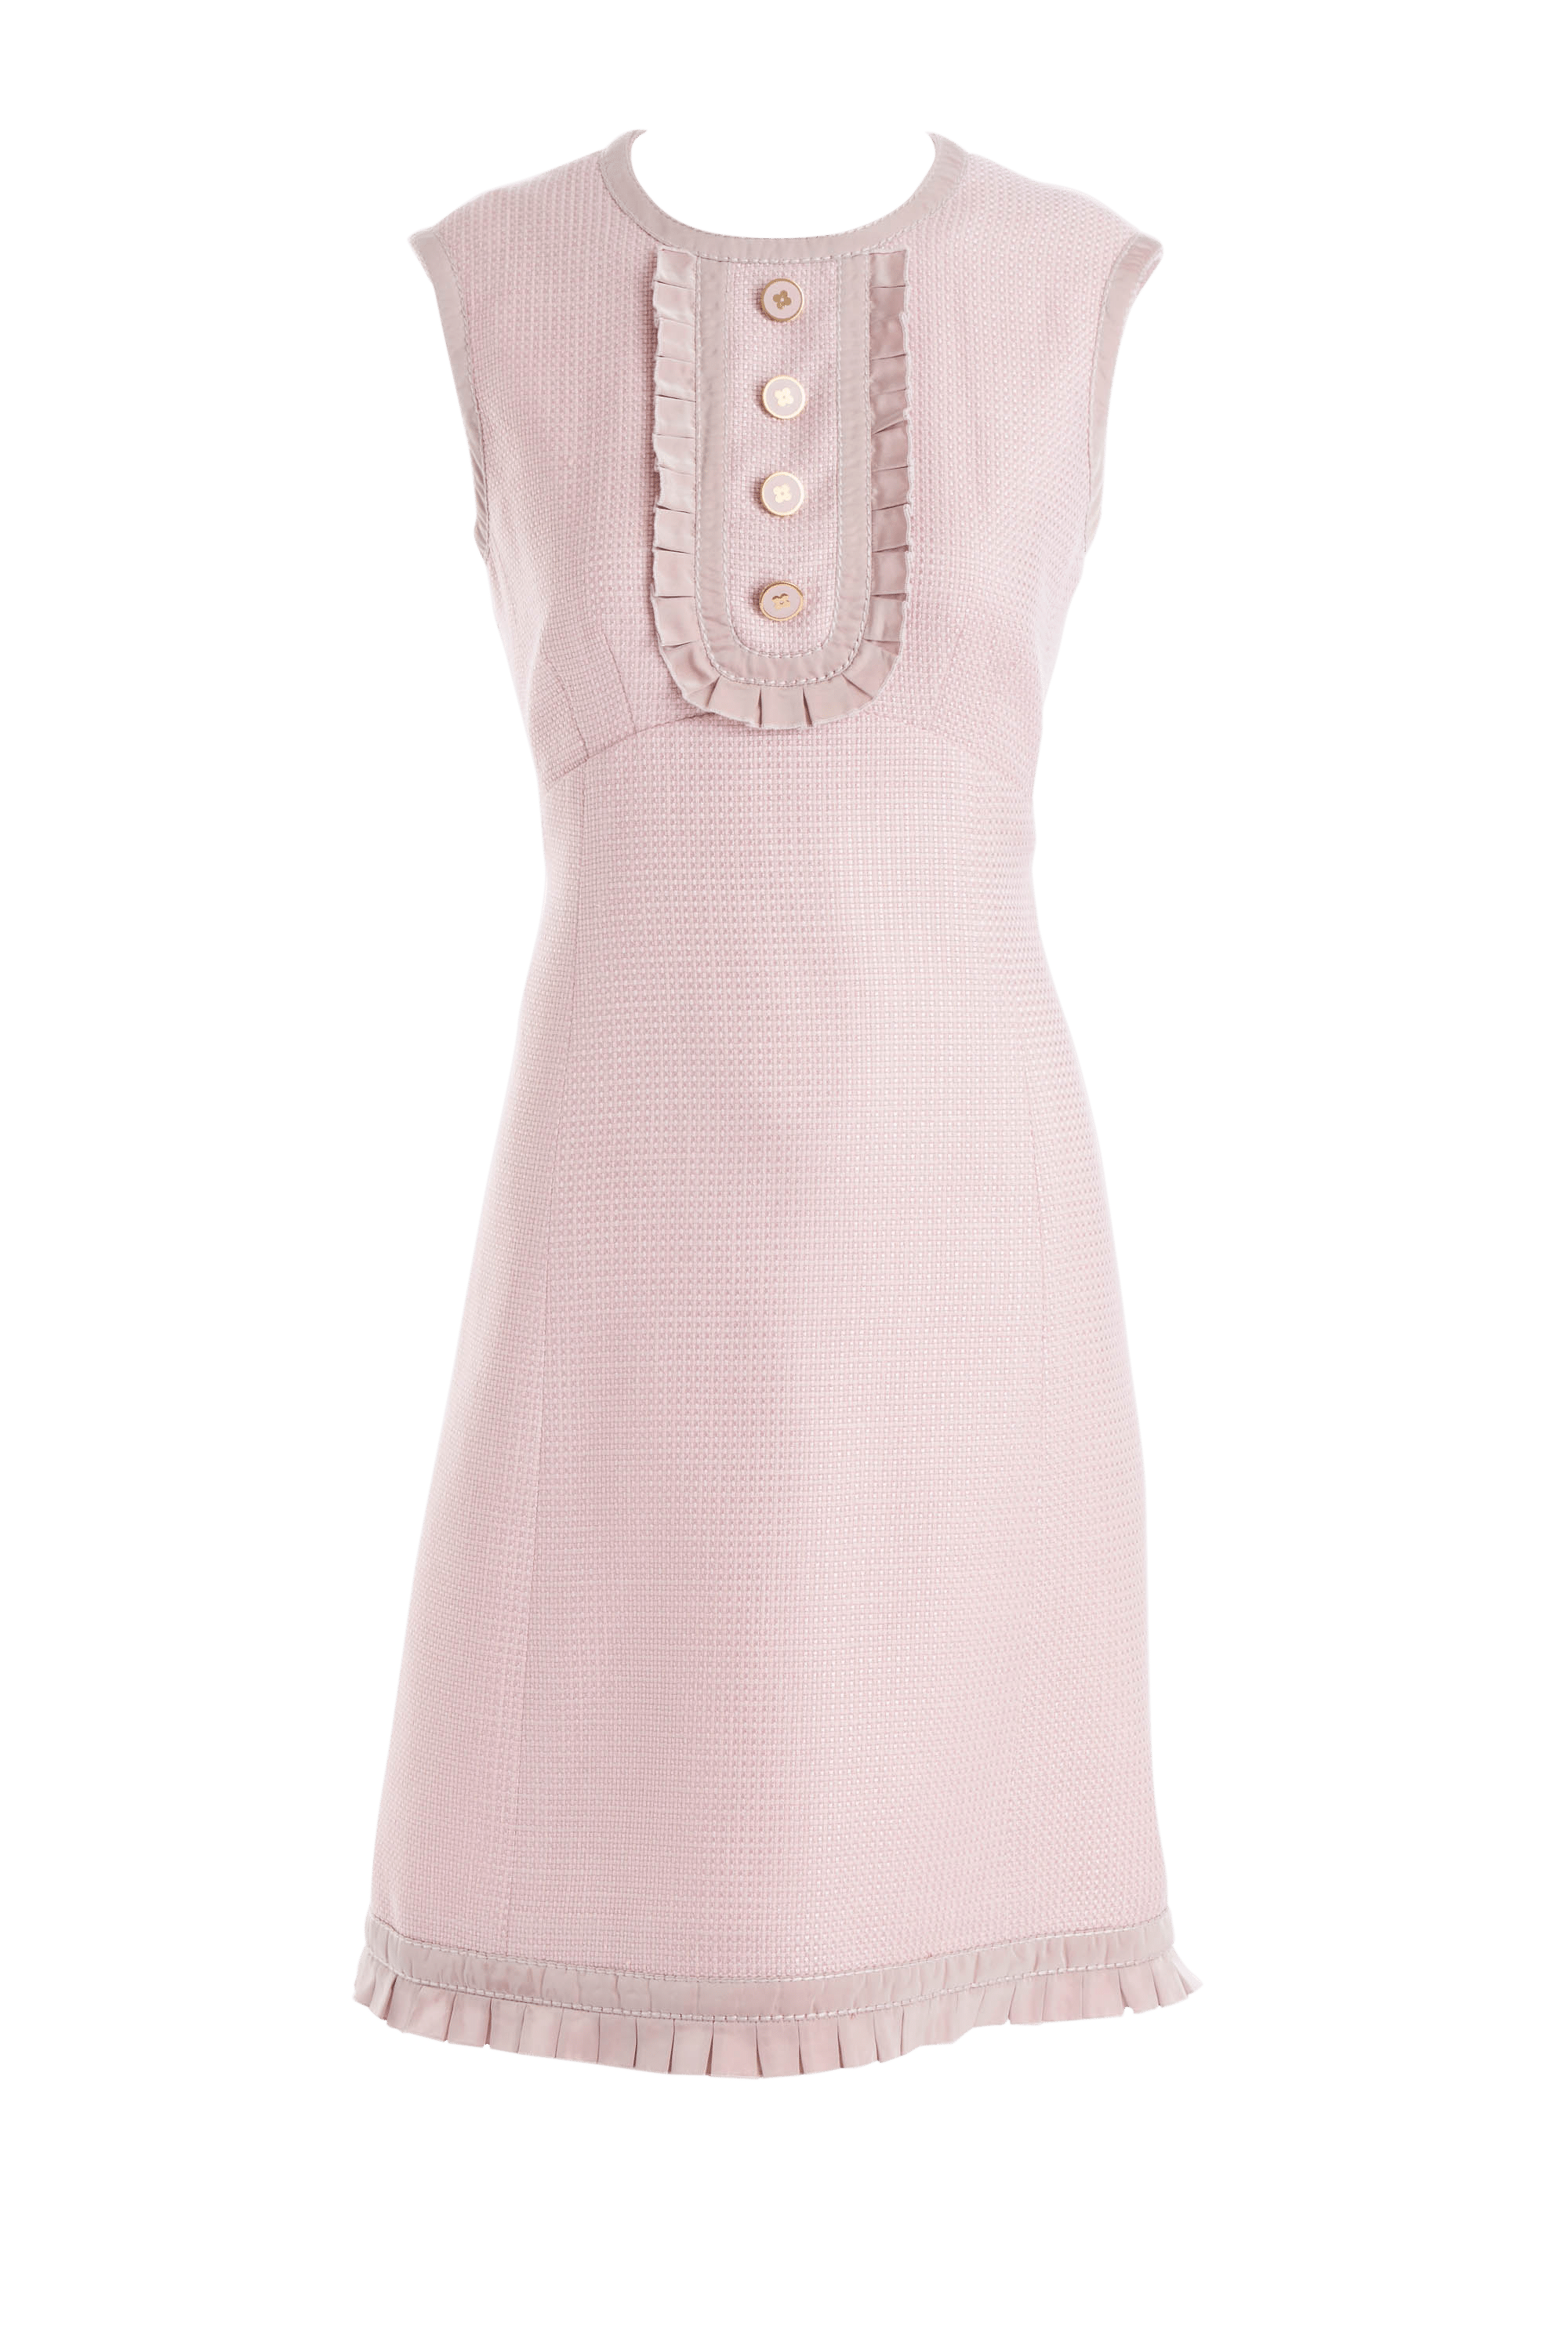 Louis Vuitton Pink A Line Sleeveless Dress Size 40